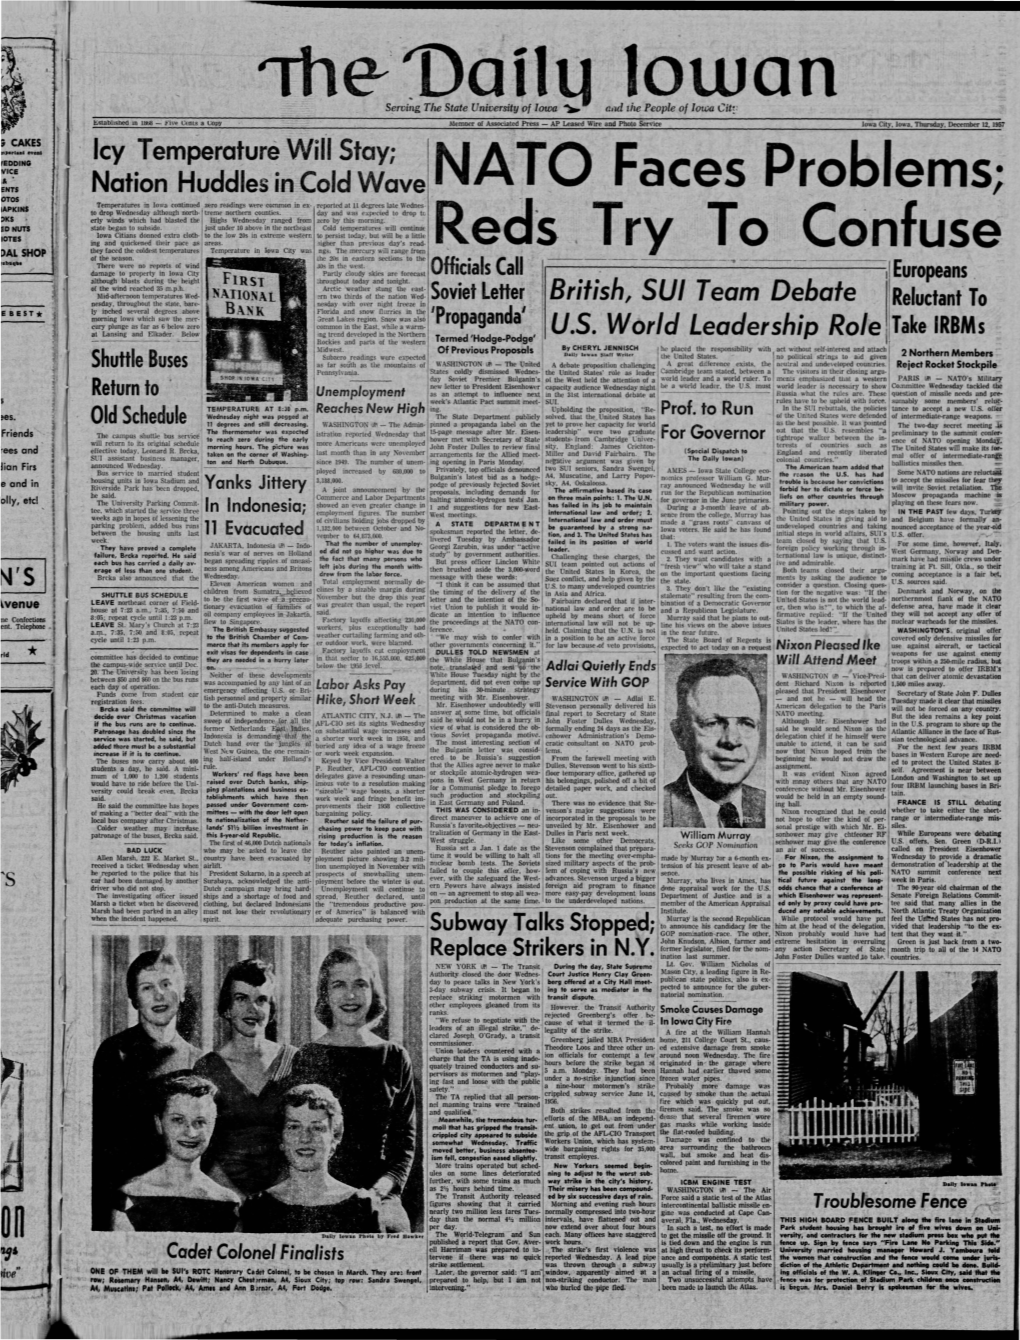 Daily Iowan (Iowa City, Iowa), 1957-12-12